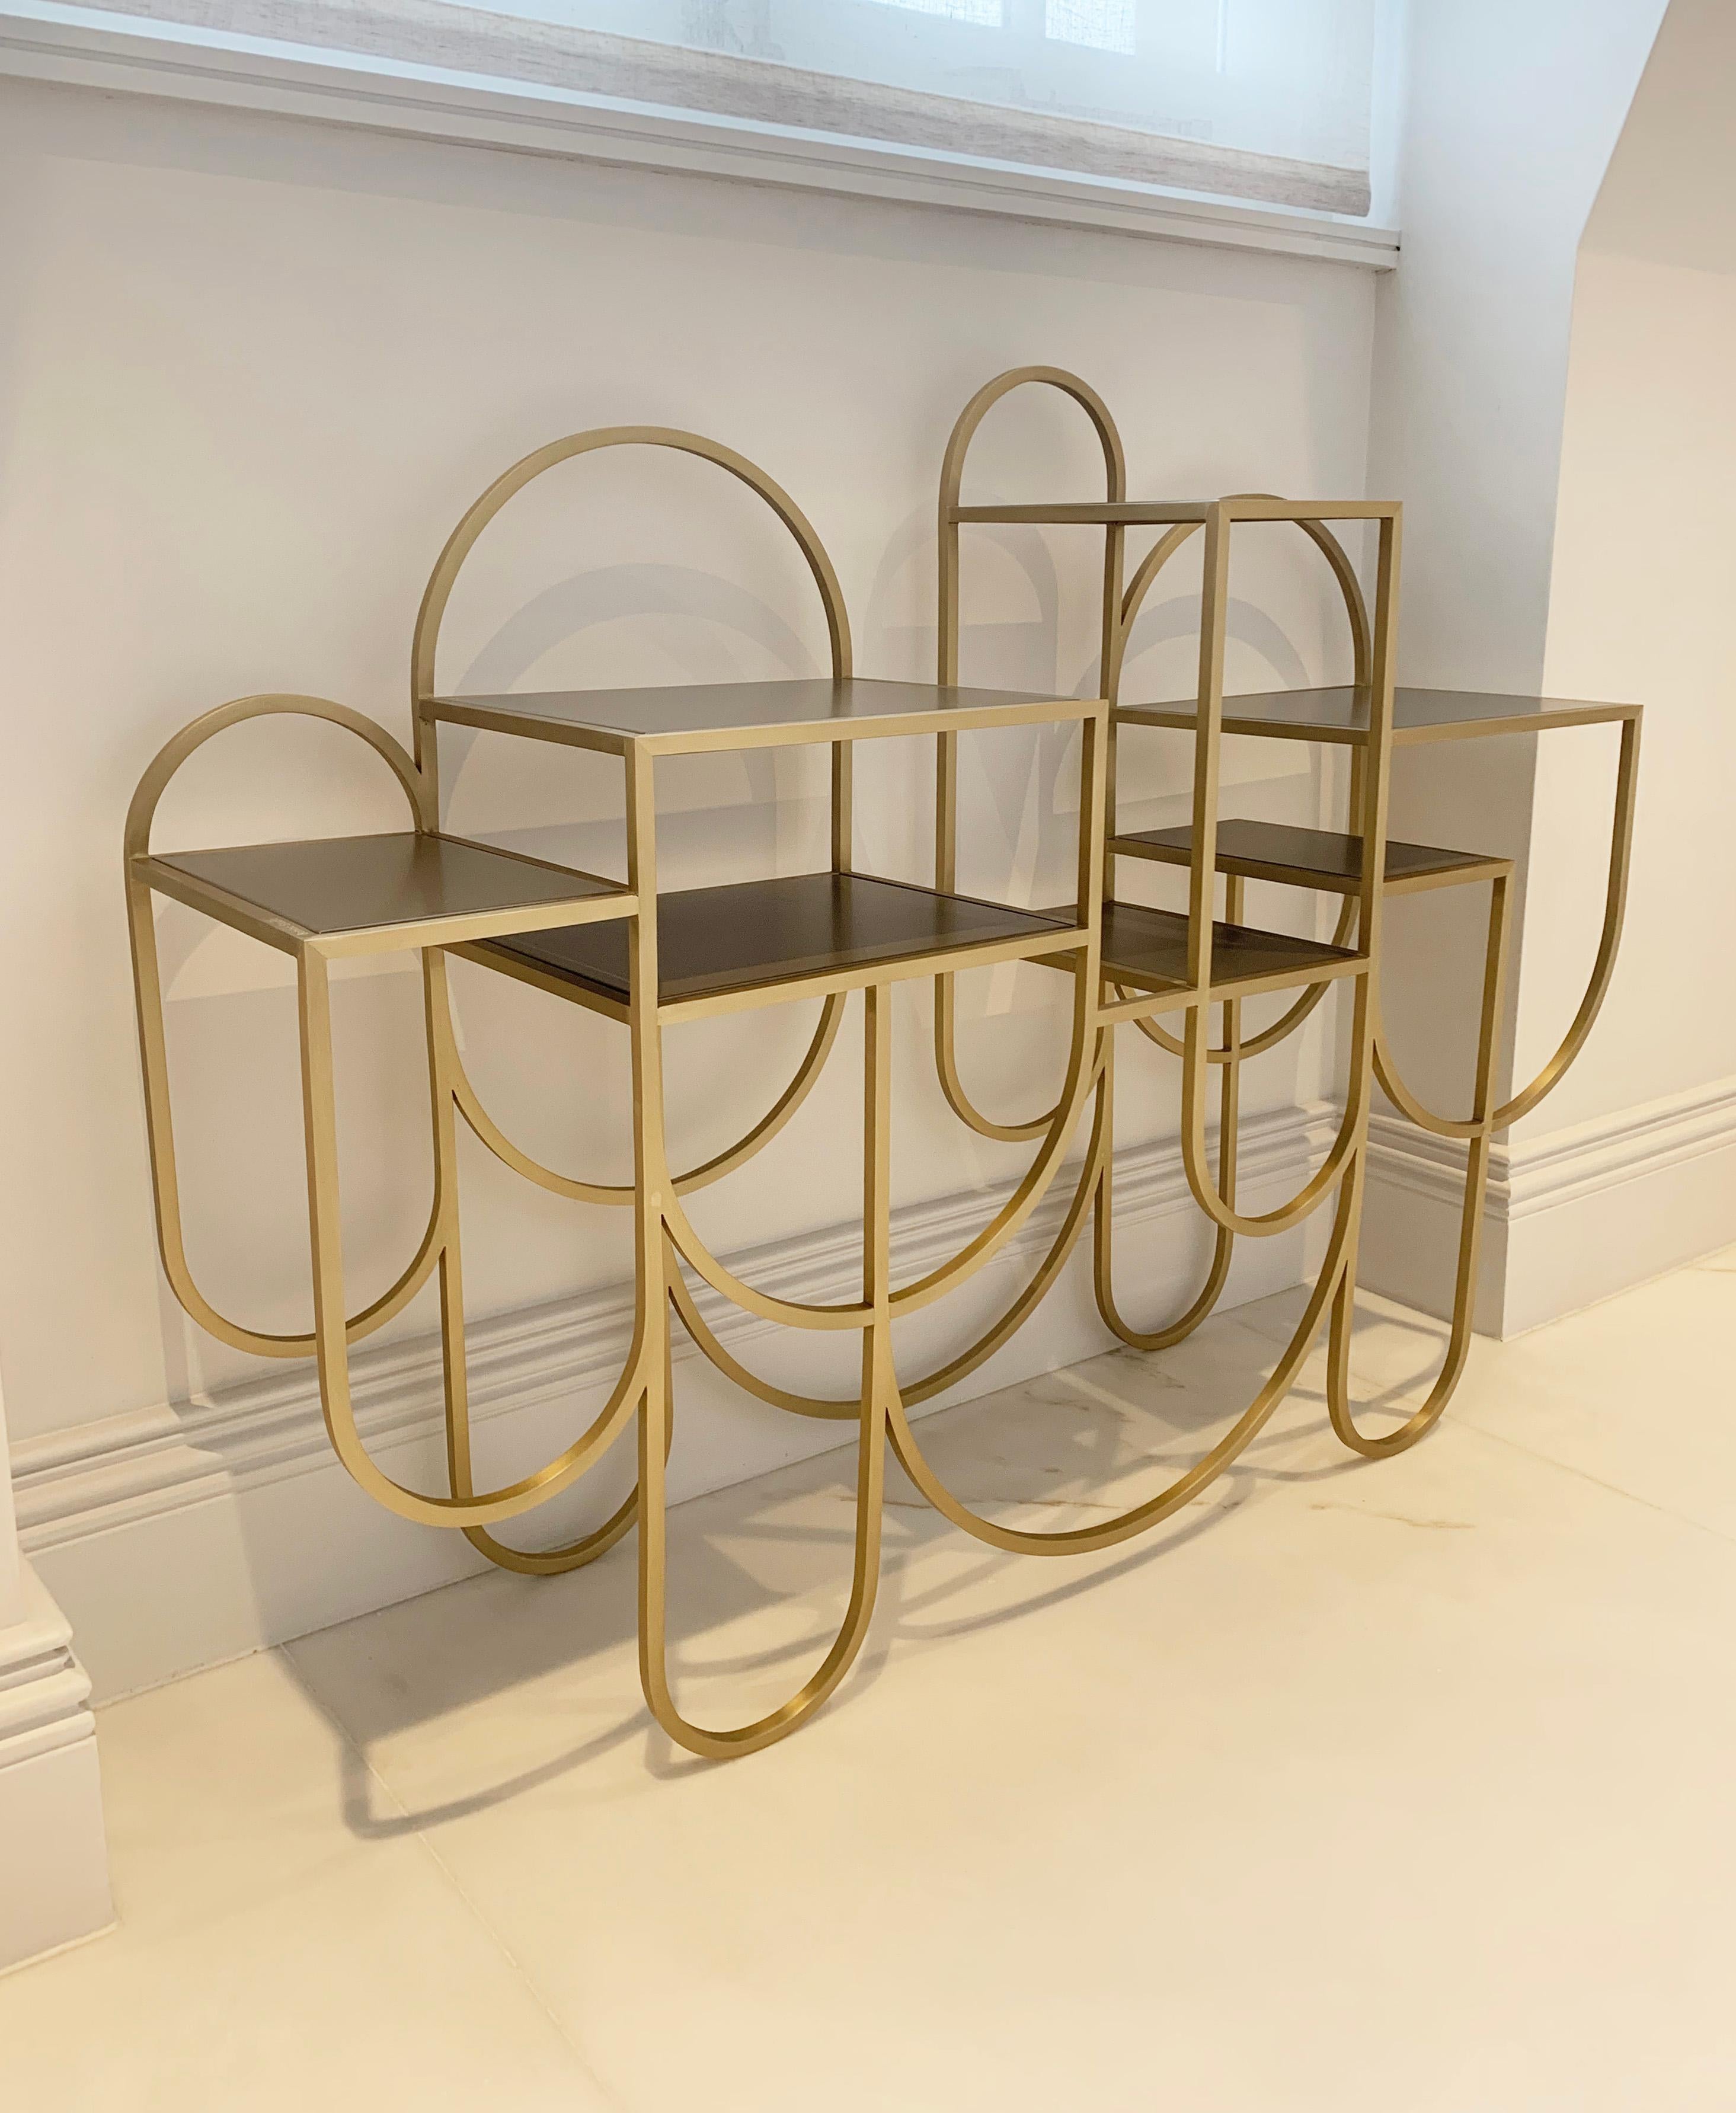 Console en métal doré de style Bauhaus avec étagères.

Cette magnifique table console de style moderniste est l'œuvre de l'emblématique créatrice de bijoux, devenue parangon du design : LARA. Cette table console est comme un bijou sculptural prêt à